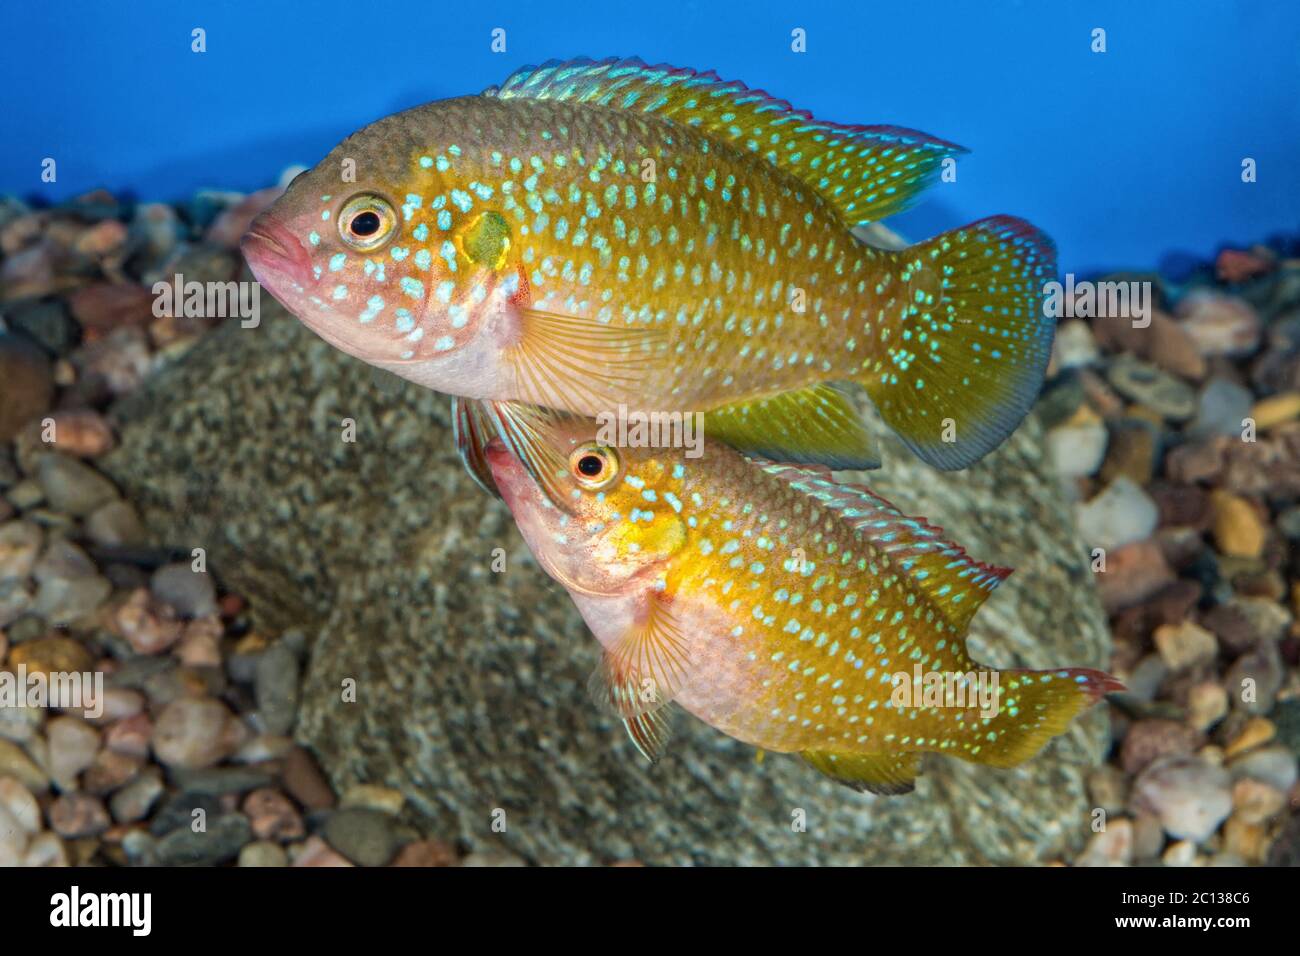 Portrait of cichlid fish (Hemichromis sp.) in aquarium Stock Photo